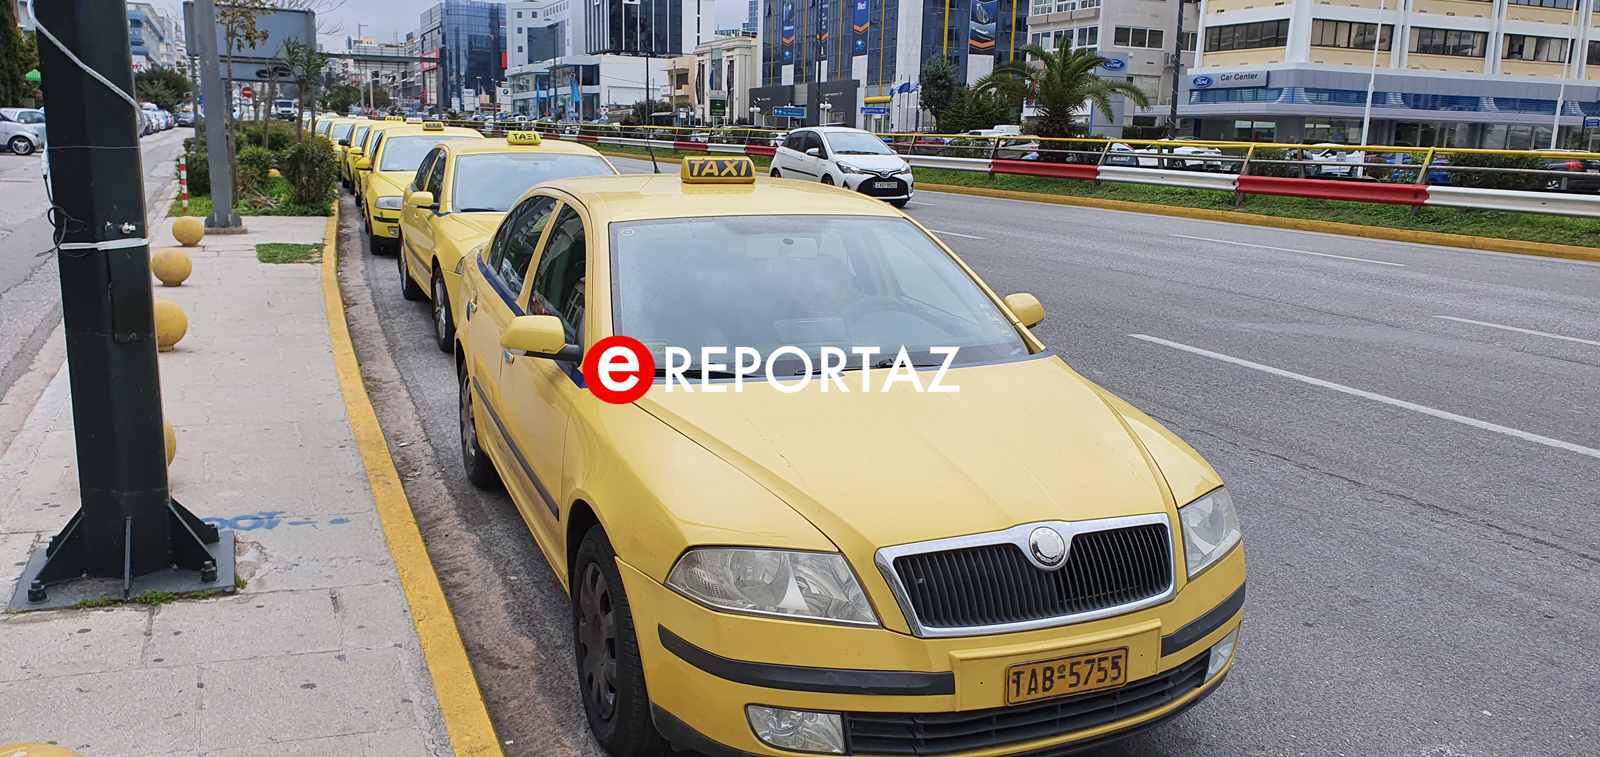 Ταξί: 24ωρη απεργία κήρυξε ο ΣΑΤΑ την Πέμπτη 23 Μαρτίου